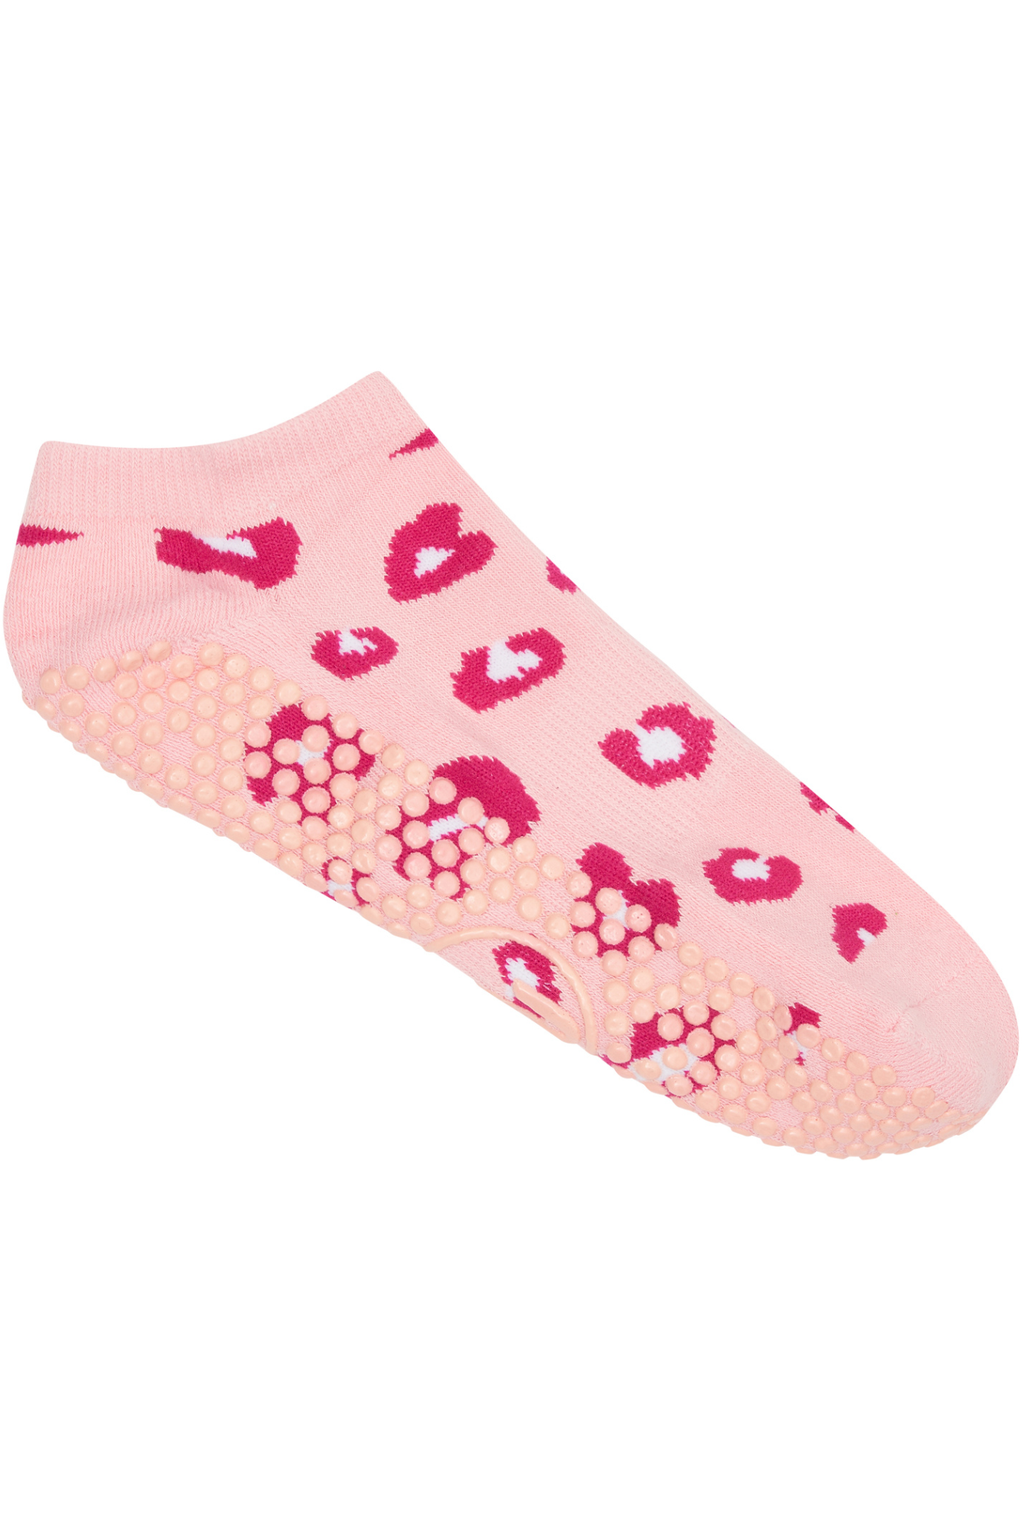 Classic Low Rise Grip Socks - Pink Cheetah